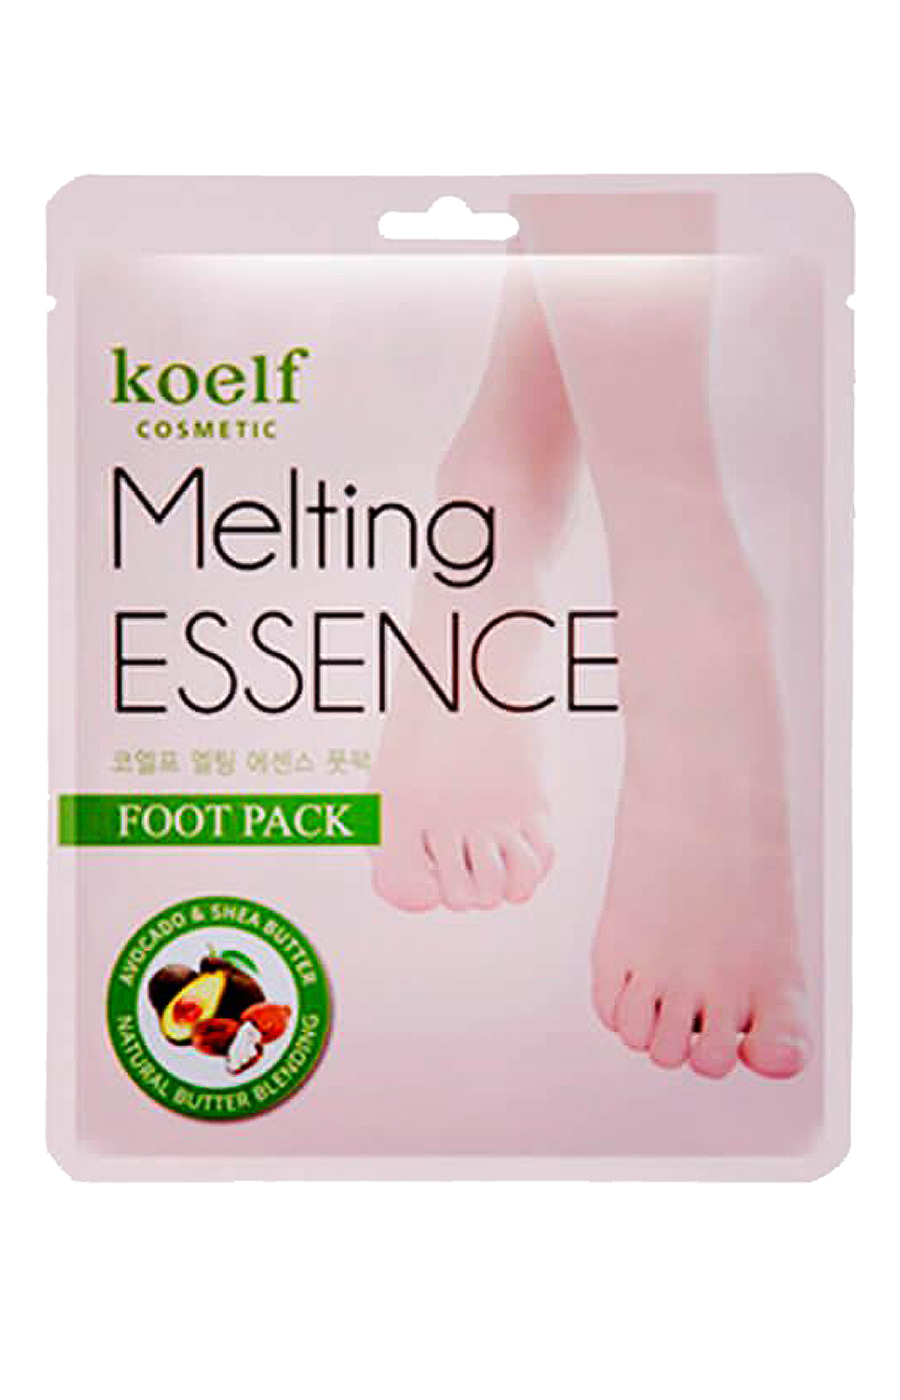 Koelf Melting Essence Foot Pack смягчающая маска-носочки для ног смягчающая, 1шт